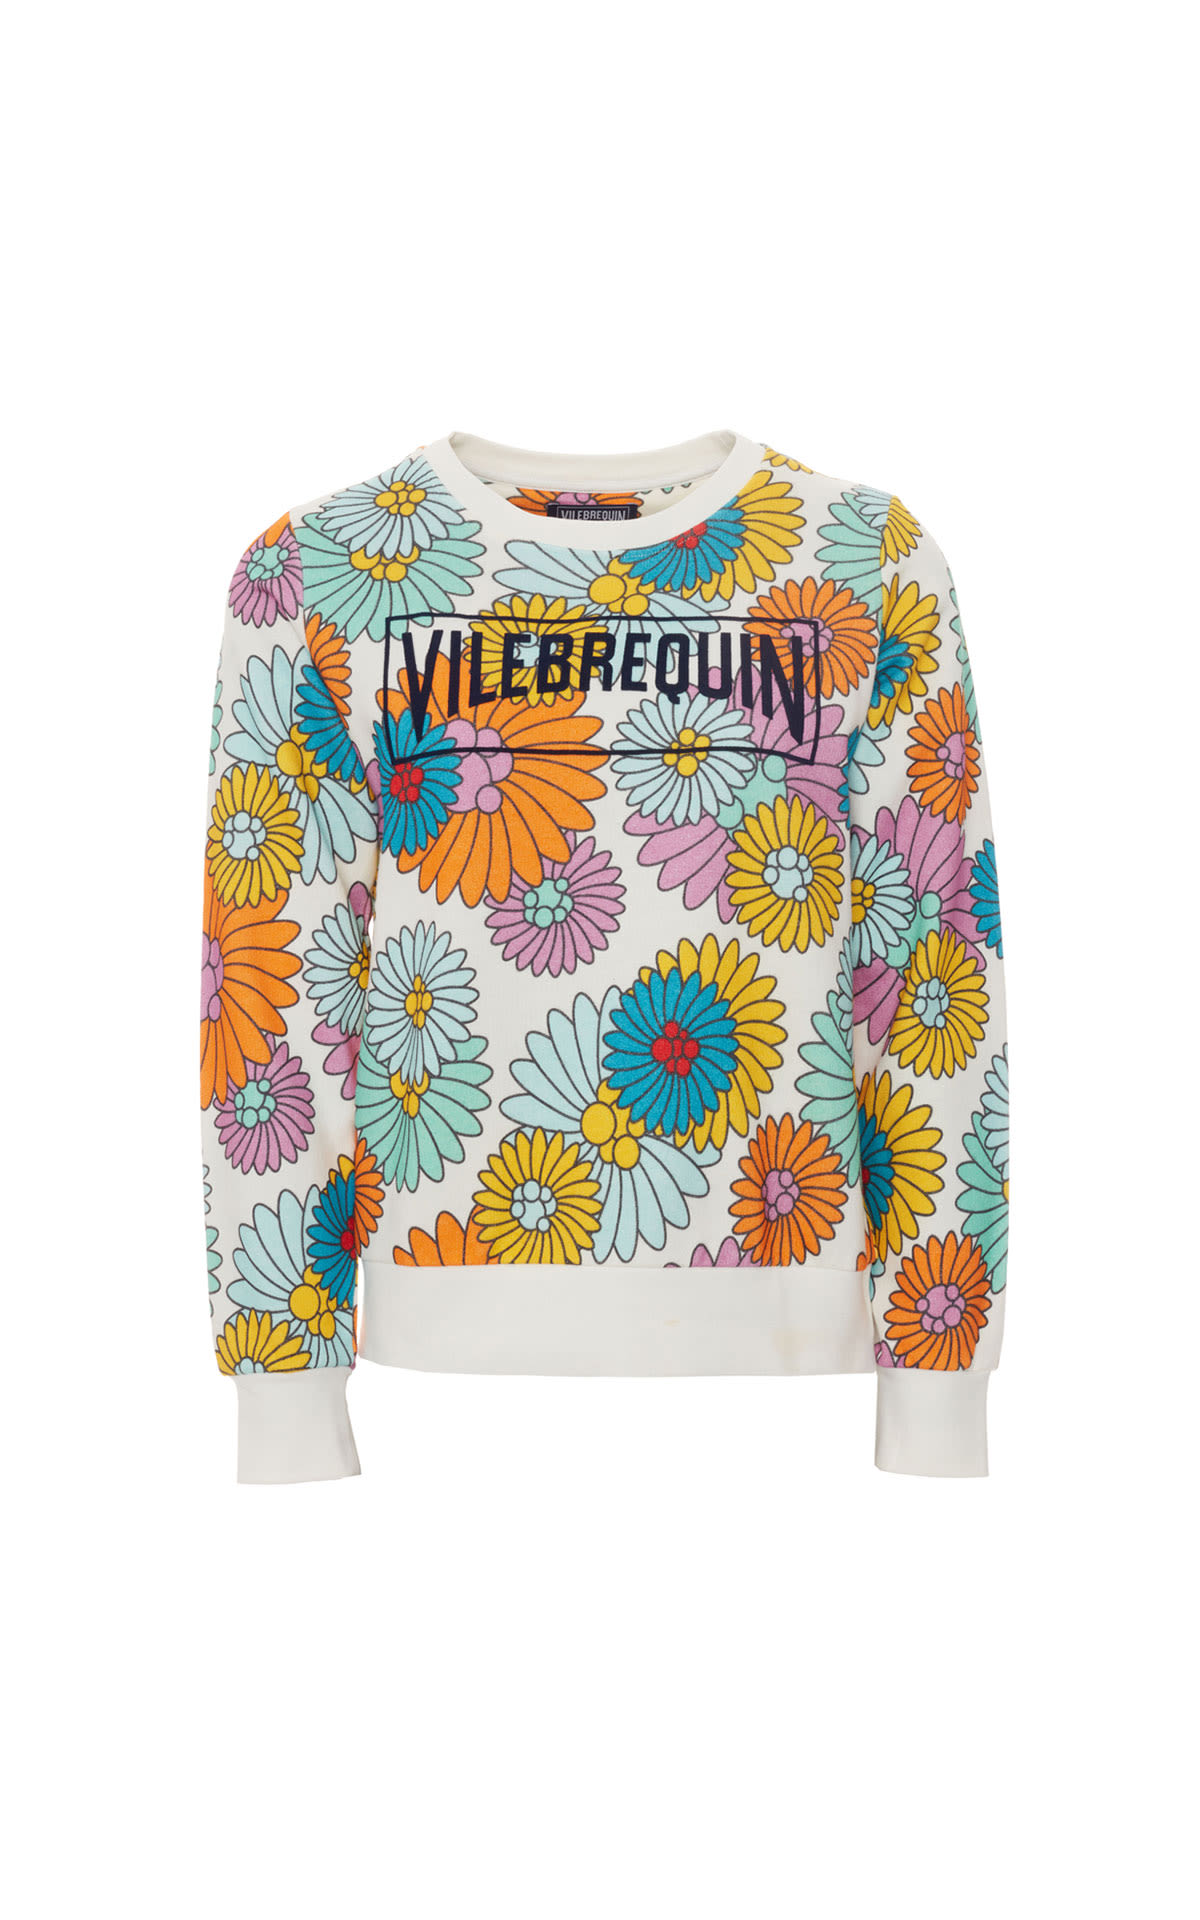 Vilebrequin Floral Sweatshirt from Bicester Village